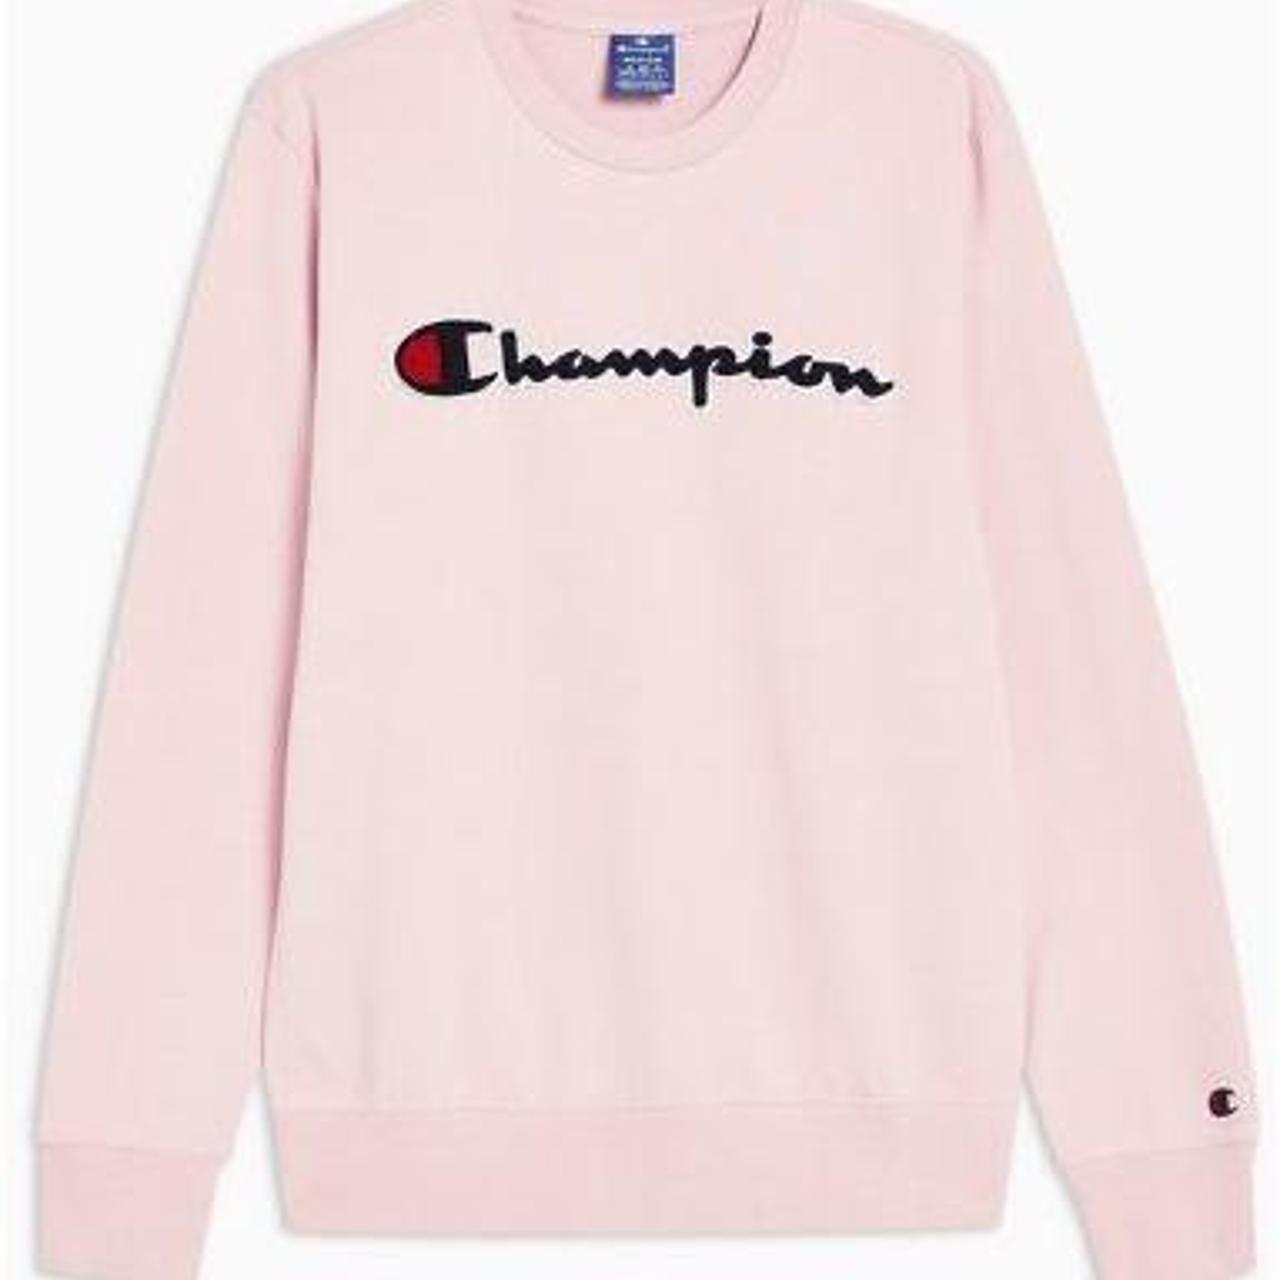 Pink Champion Sweatshirt Large - Depop